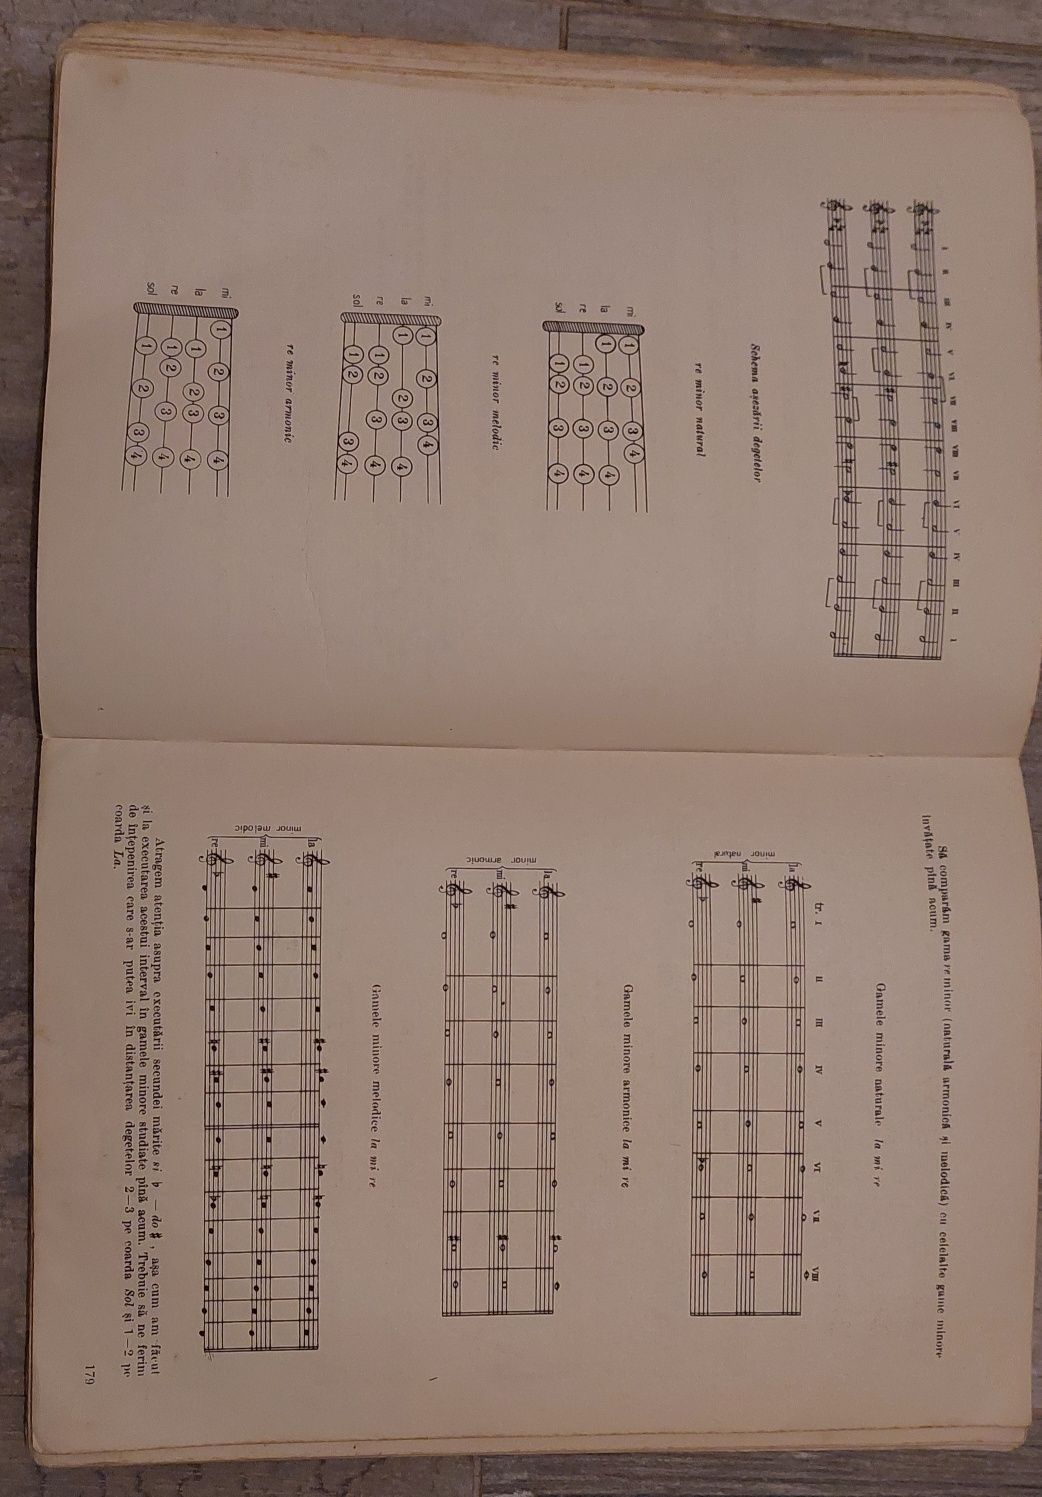 Manual de vioară - Ionel Geantă / George Manoliu vol. 2